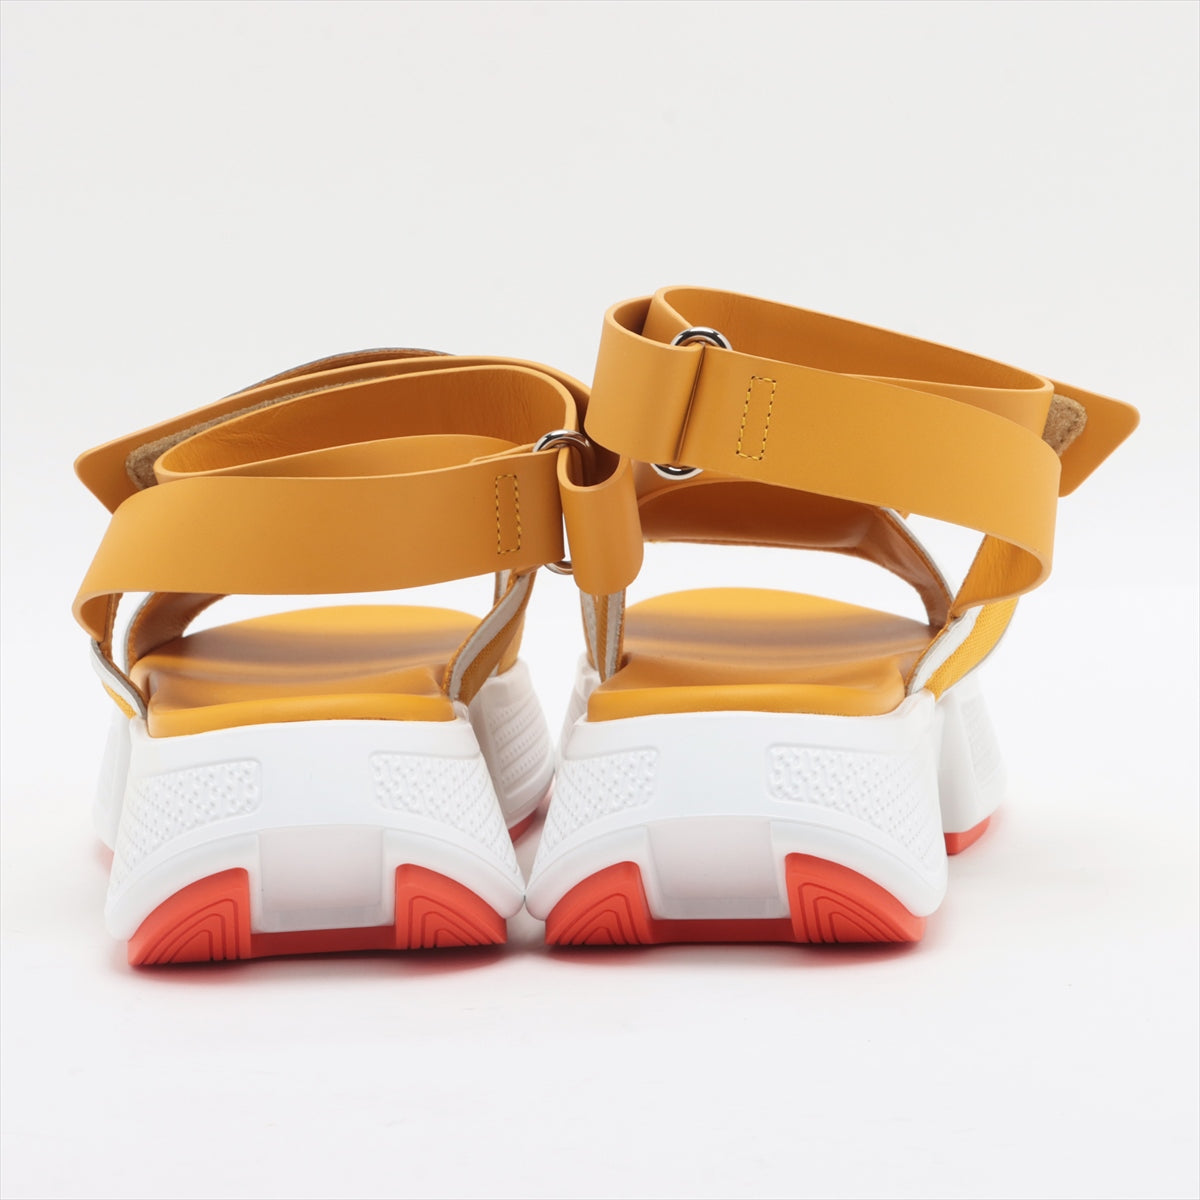 Hermès Leather Sandals 36.5 Ladies' Yellow geek Bag Included